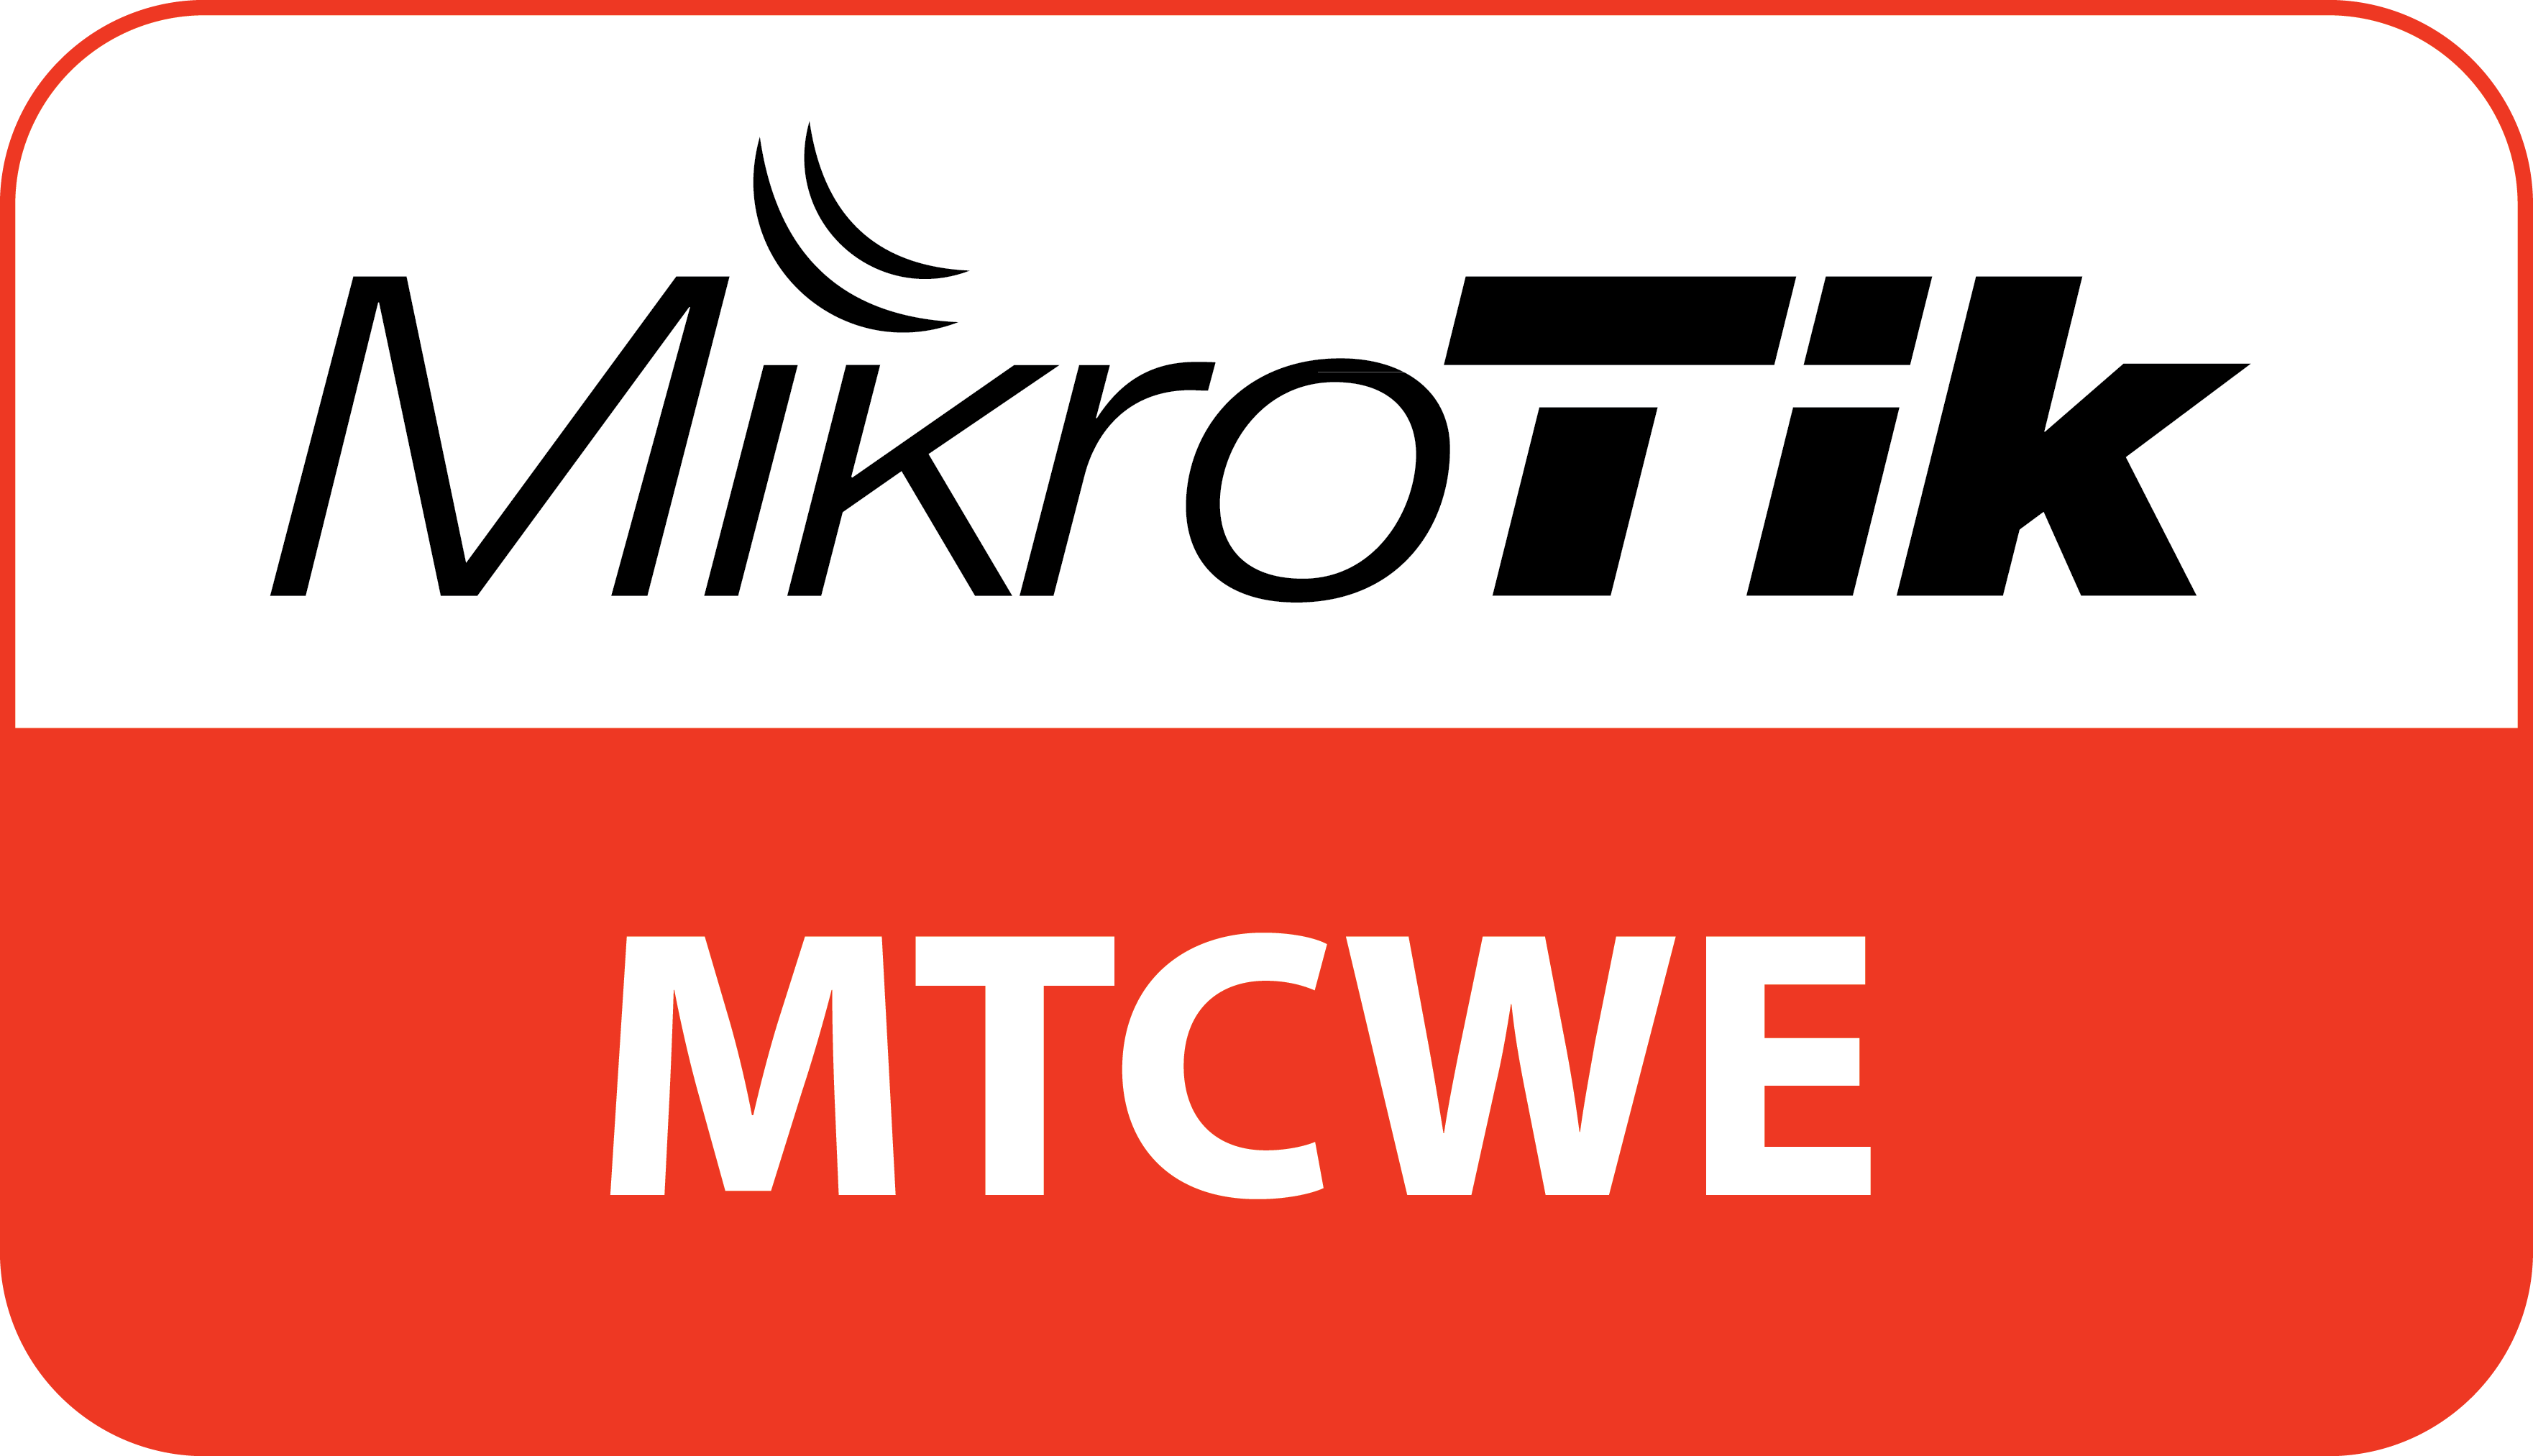 دوره MTCWE از سری دوره های میکروتیک